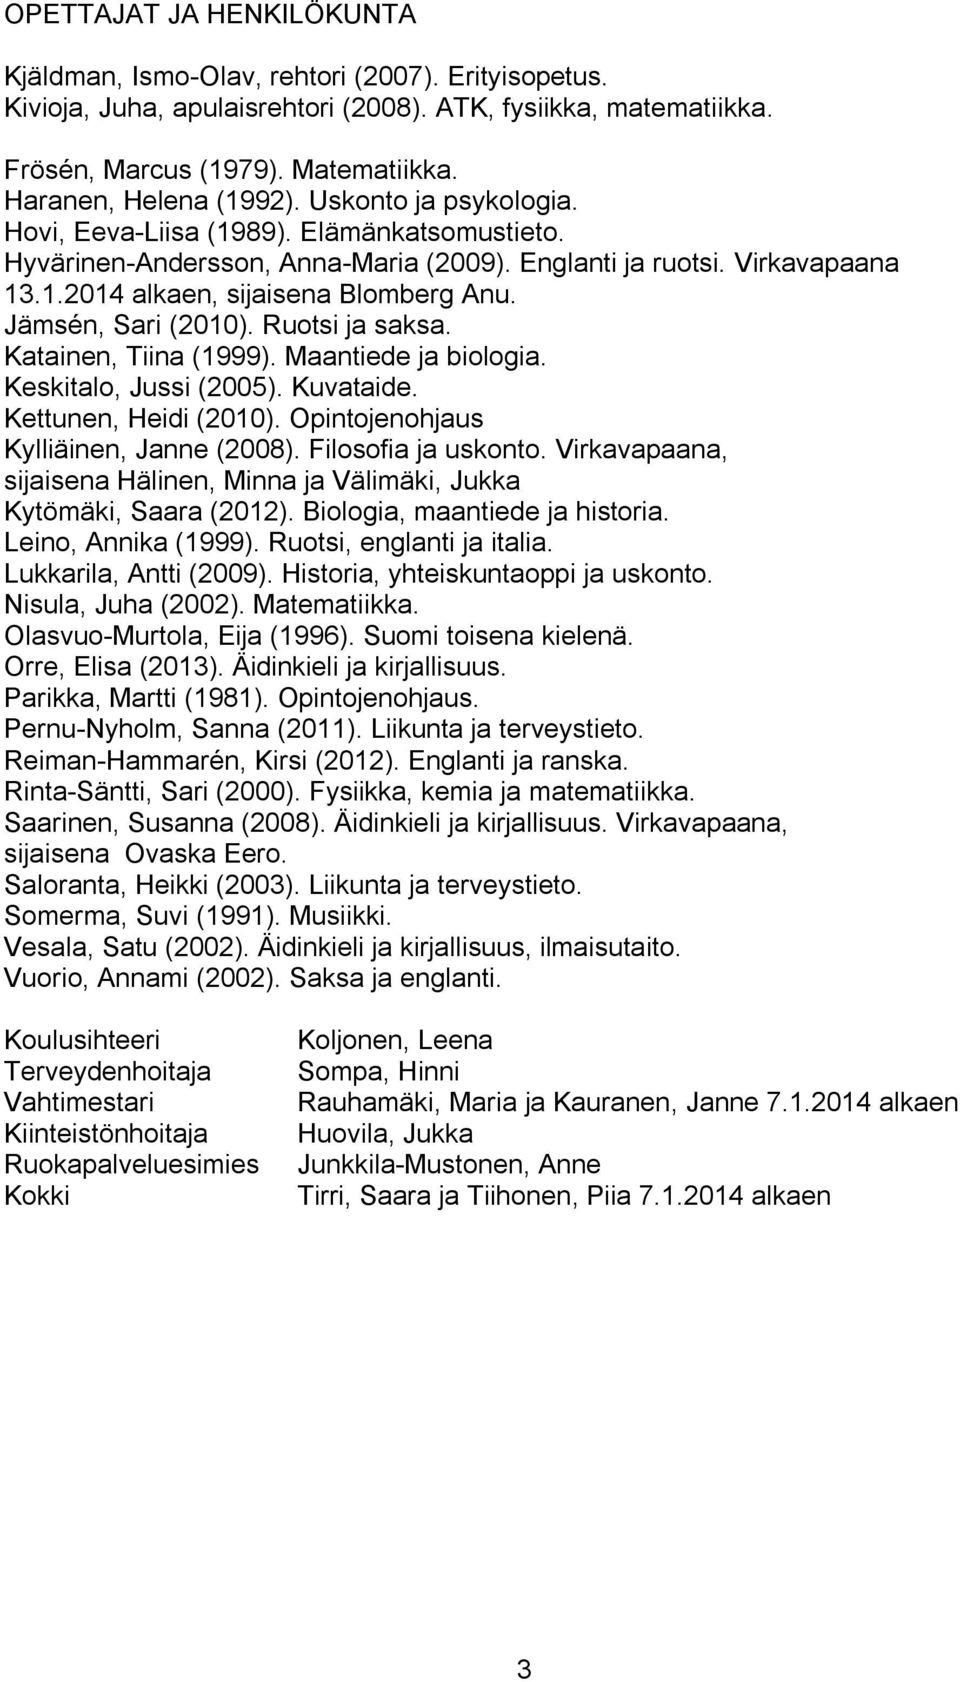 Jämsén, Sari (2010). Ruotsi ja saksa. Katainen, Tiina (1999). Maantiede ja biologia. Keskitalo, Jussi (2005). Kuvataide. Kettunen, Heidi (2010). Opintojenohjaus Kylliäinen, Janne (2008).